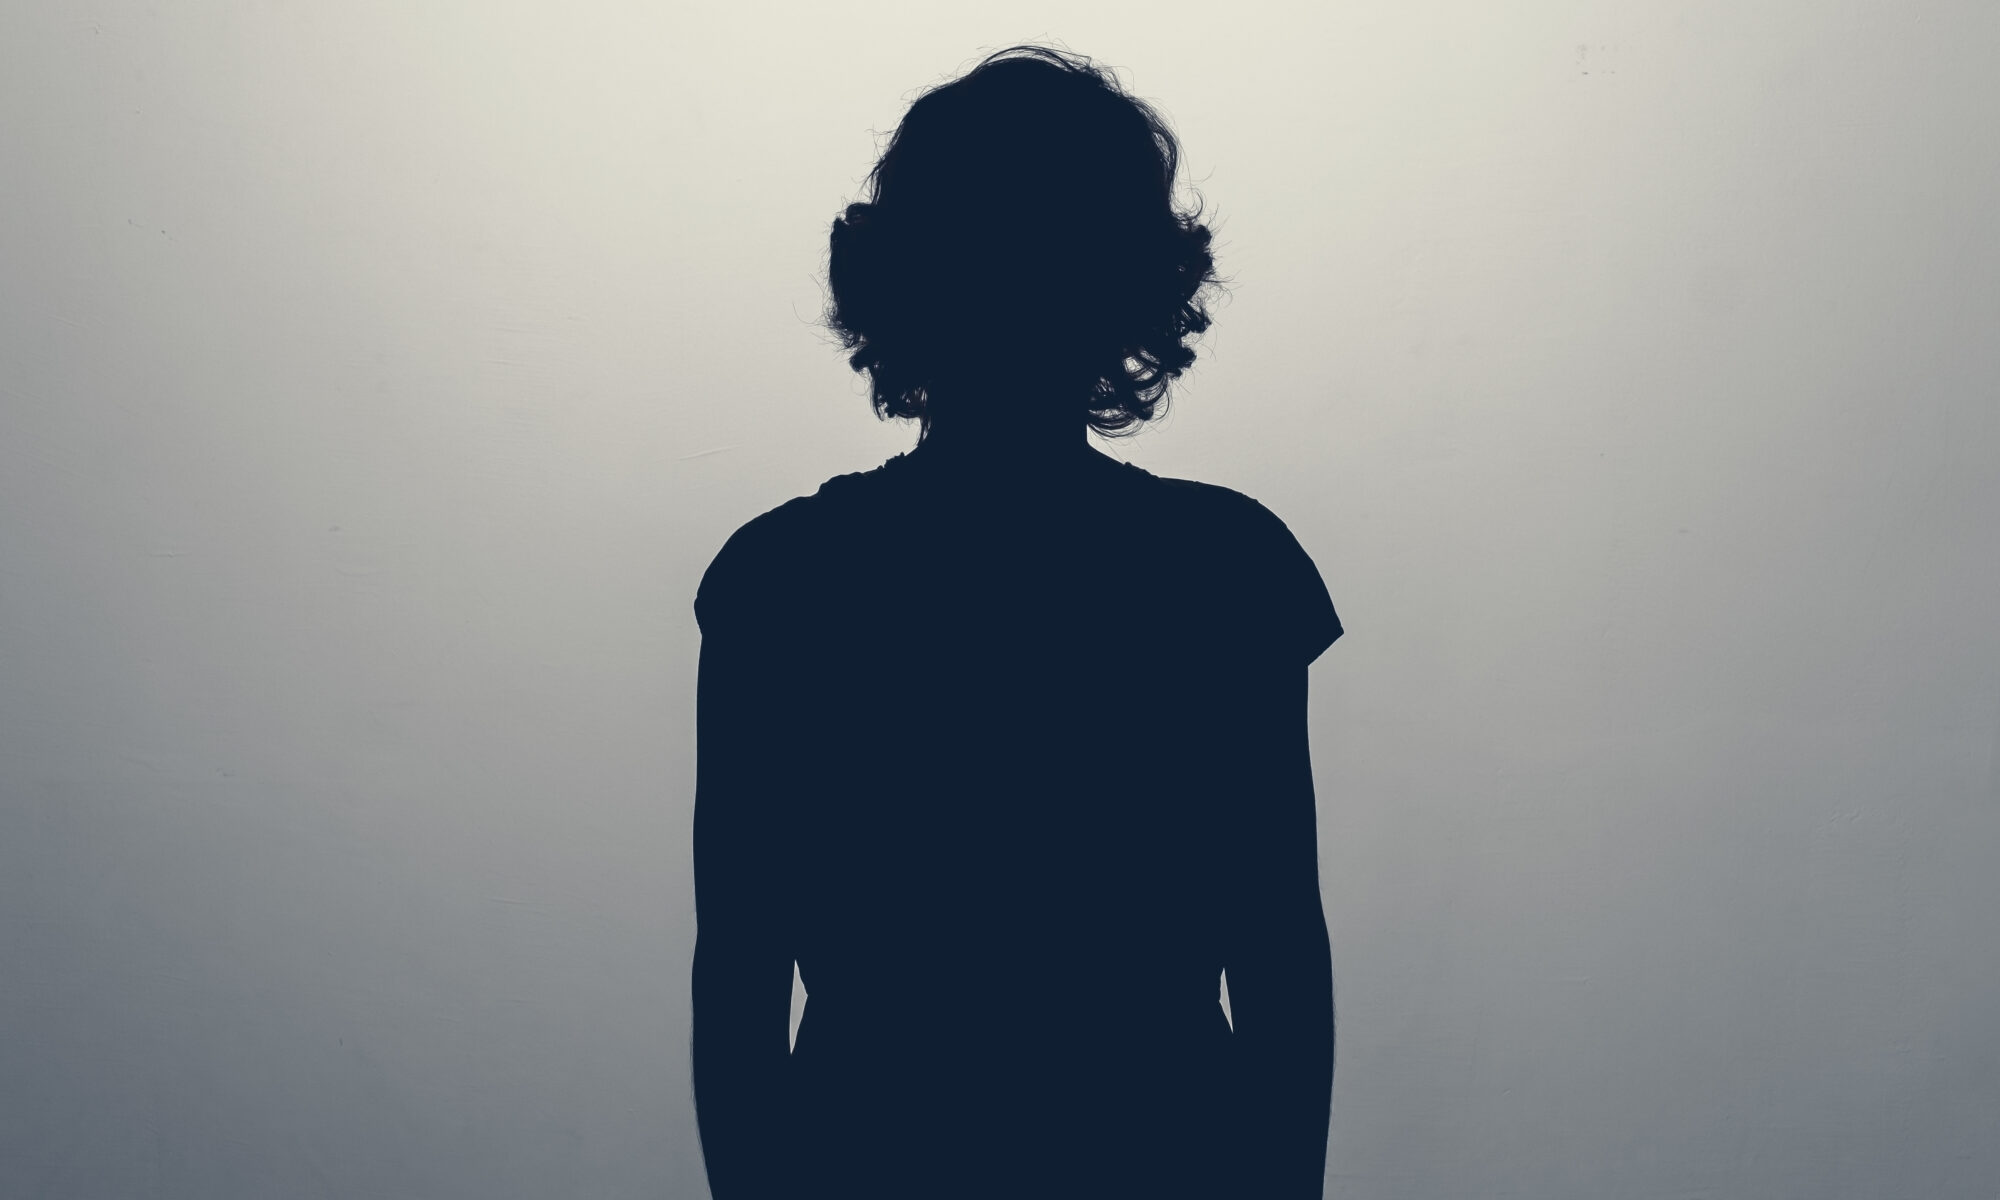 Unknown female person silhouette